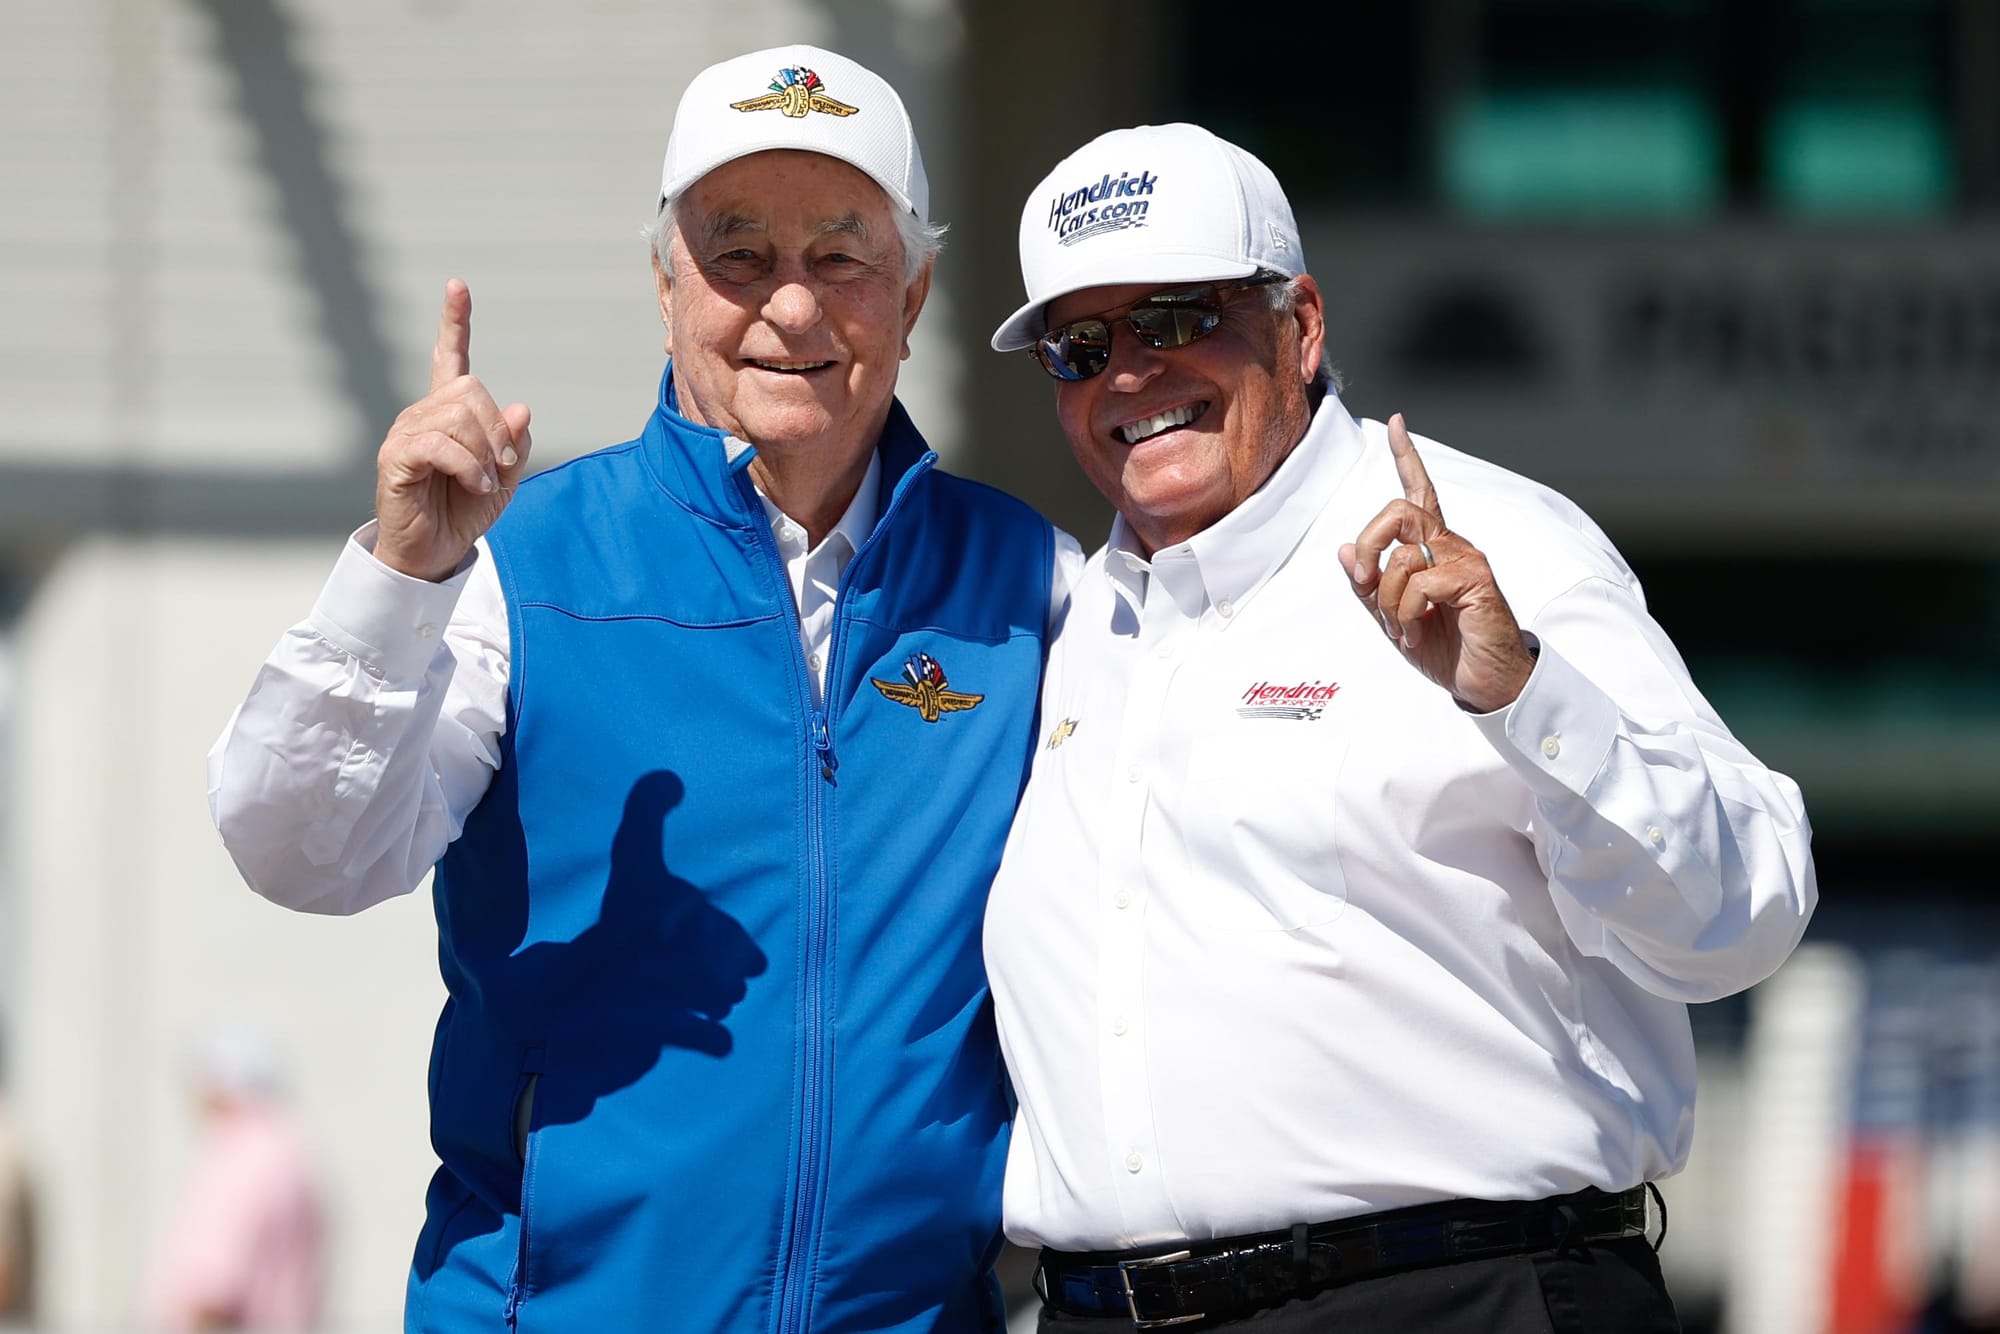 Roger Penske and Rick Hendrick, IndyCar